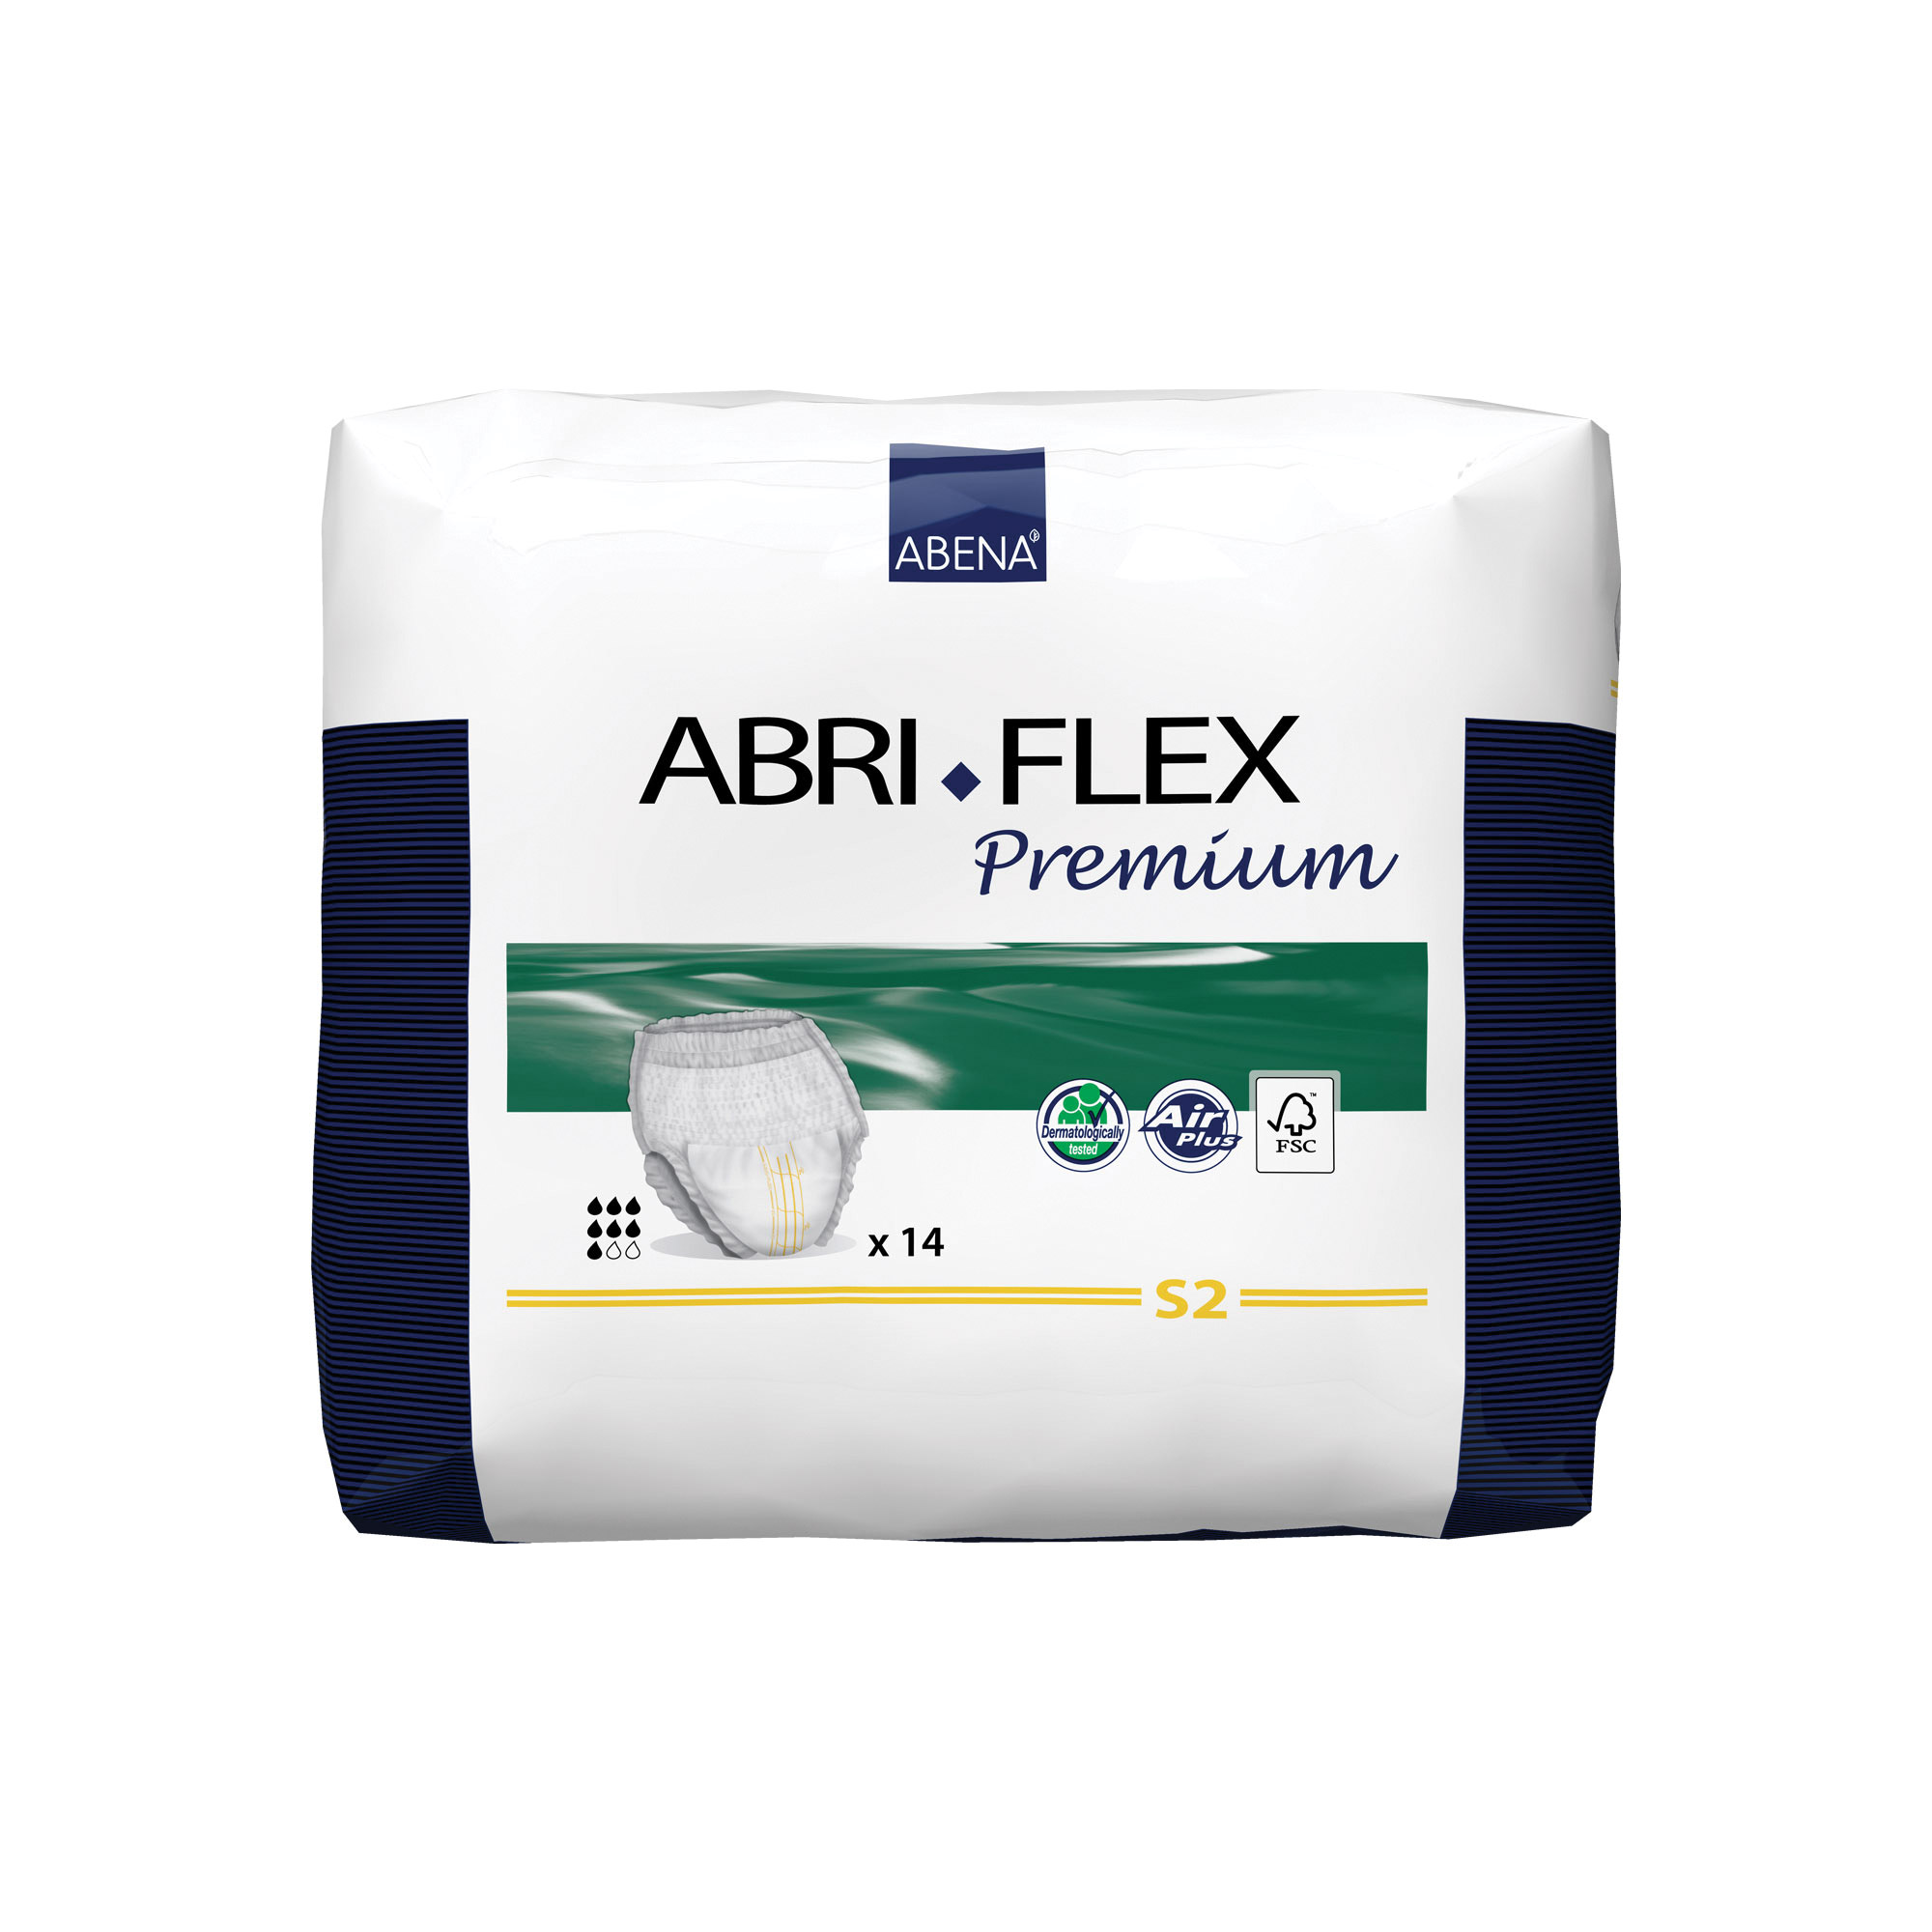 Abri-Flex Premium S2 - 14 Pack